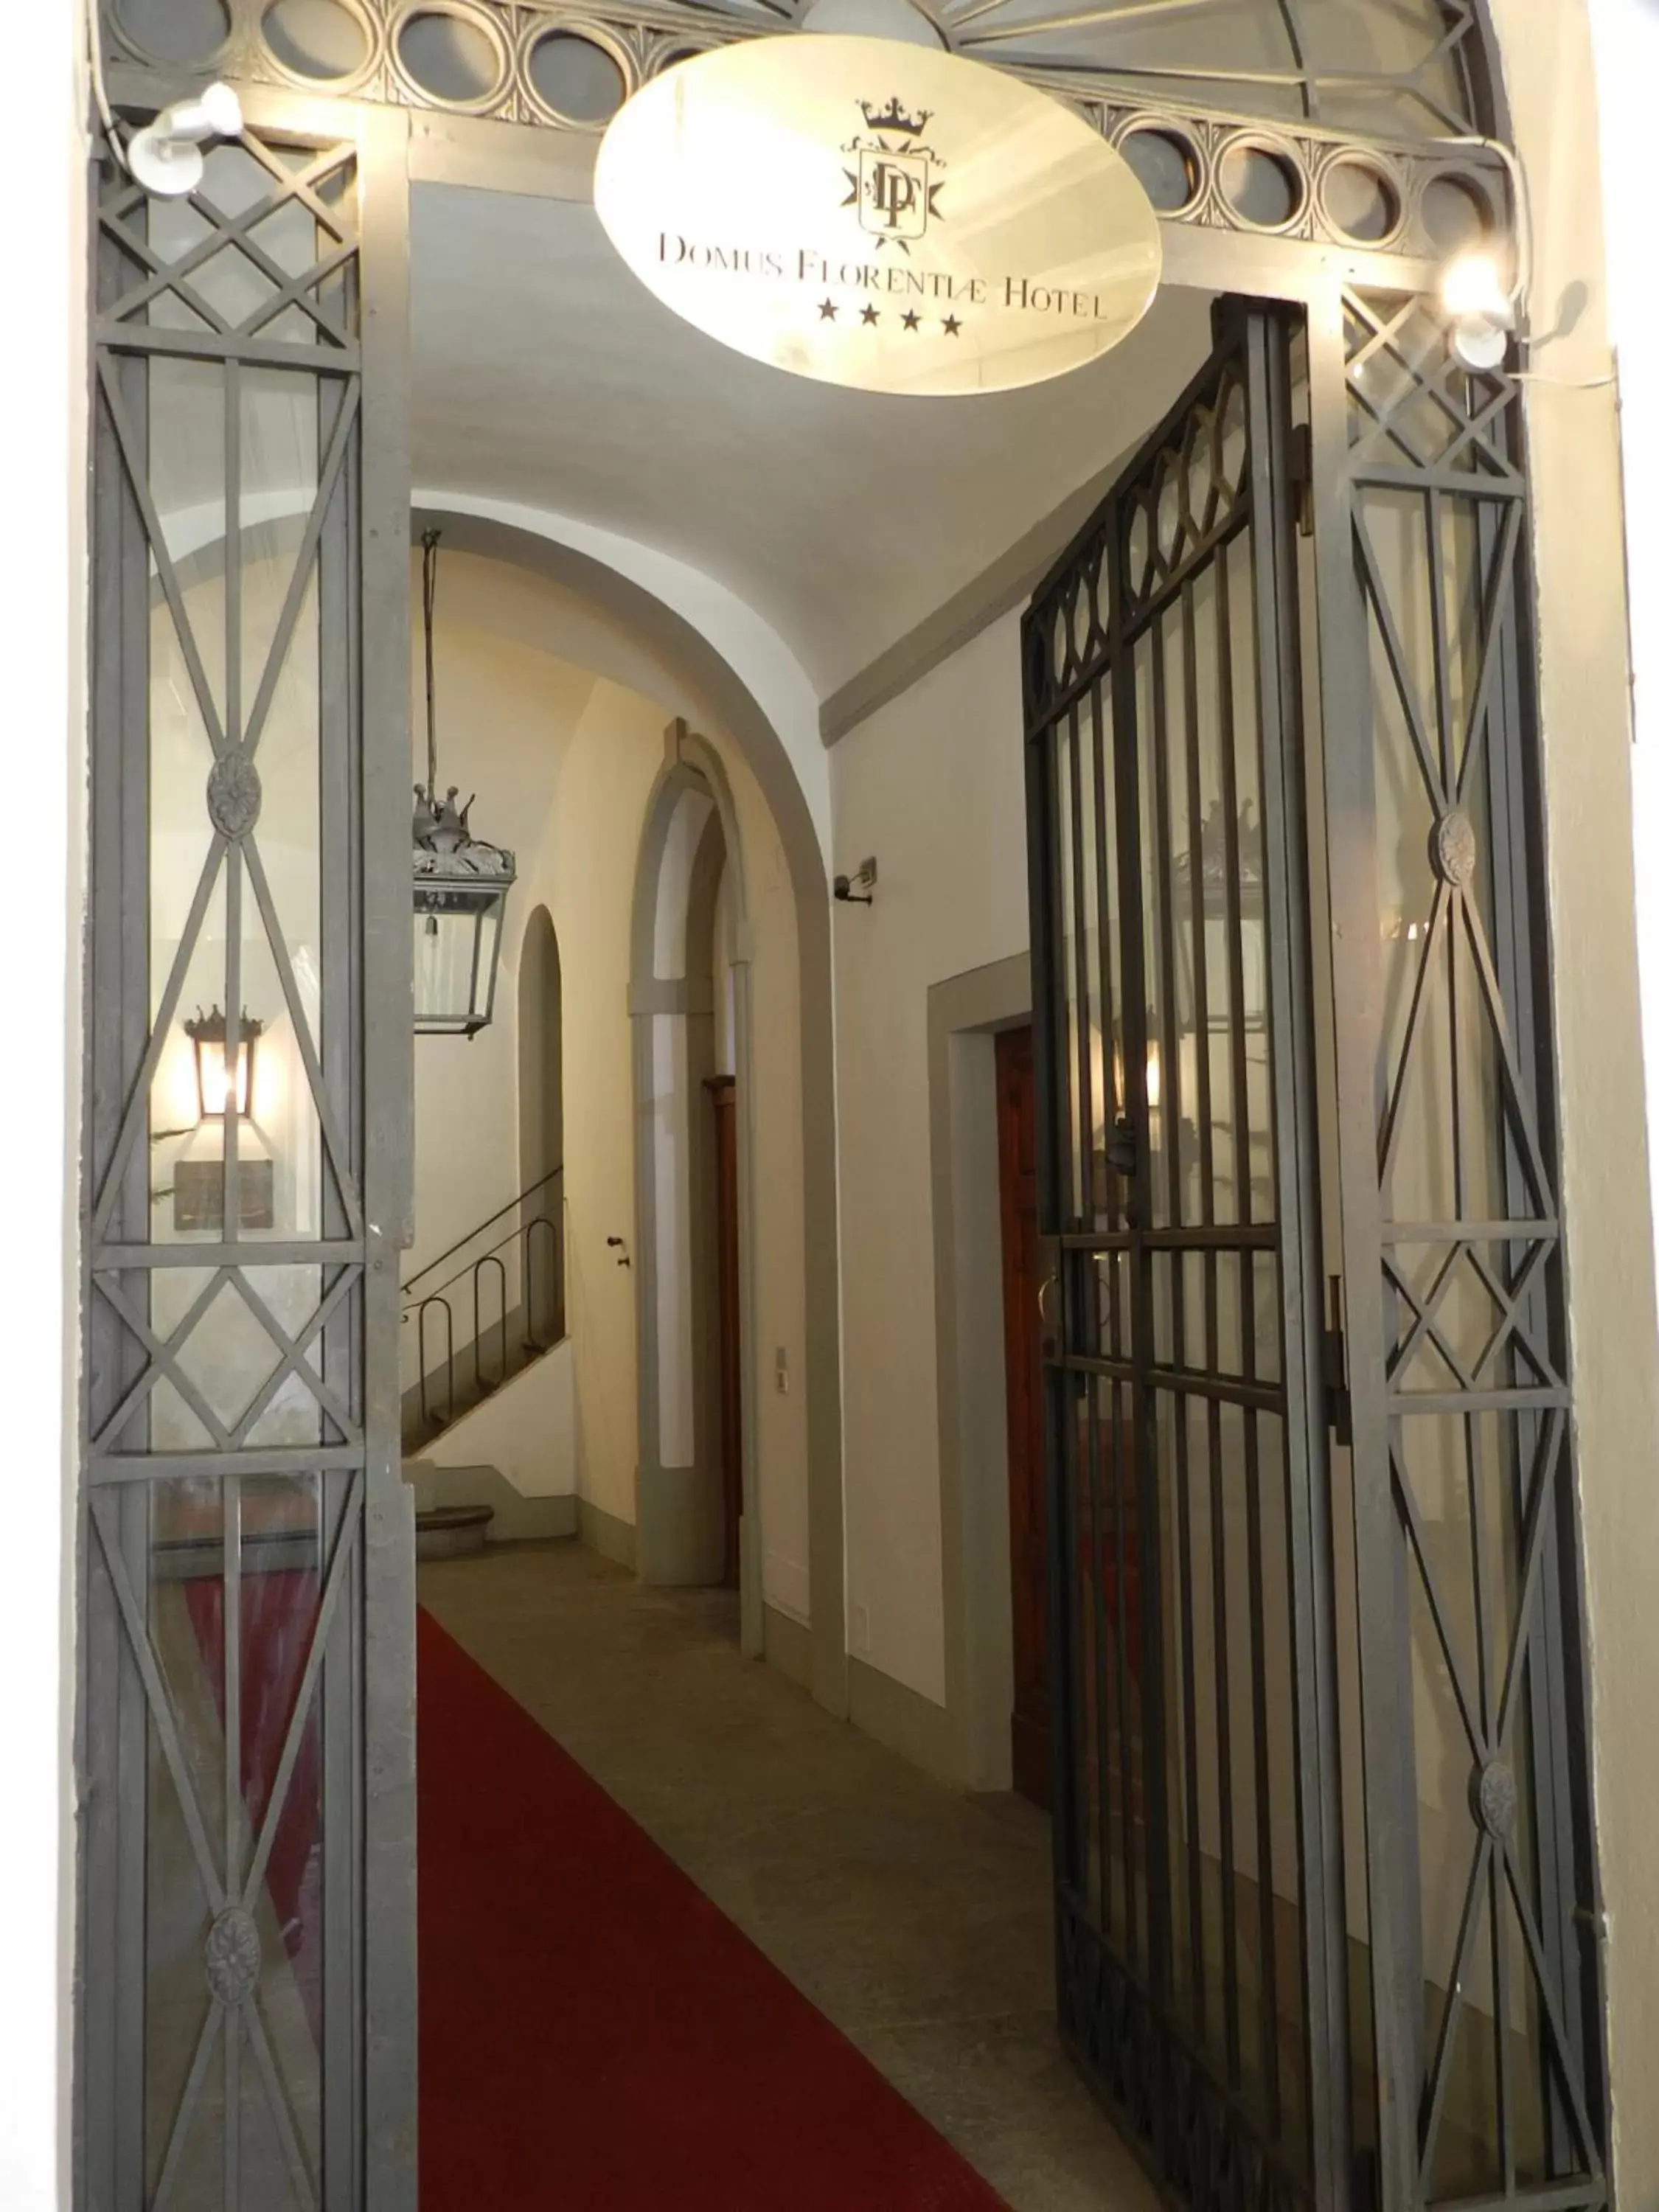 Facade/entrance in Domus Florentiae Hotel